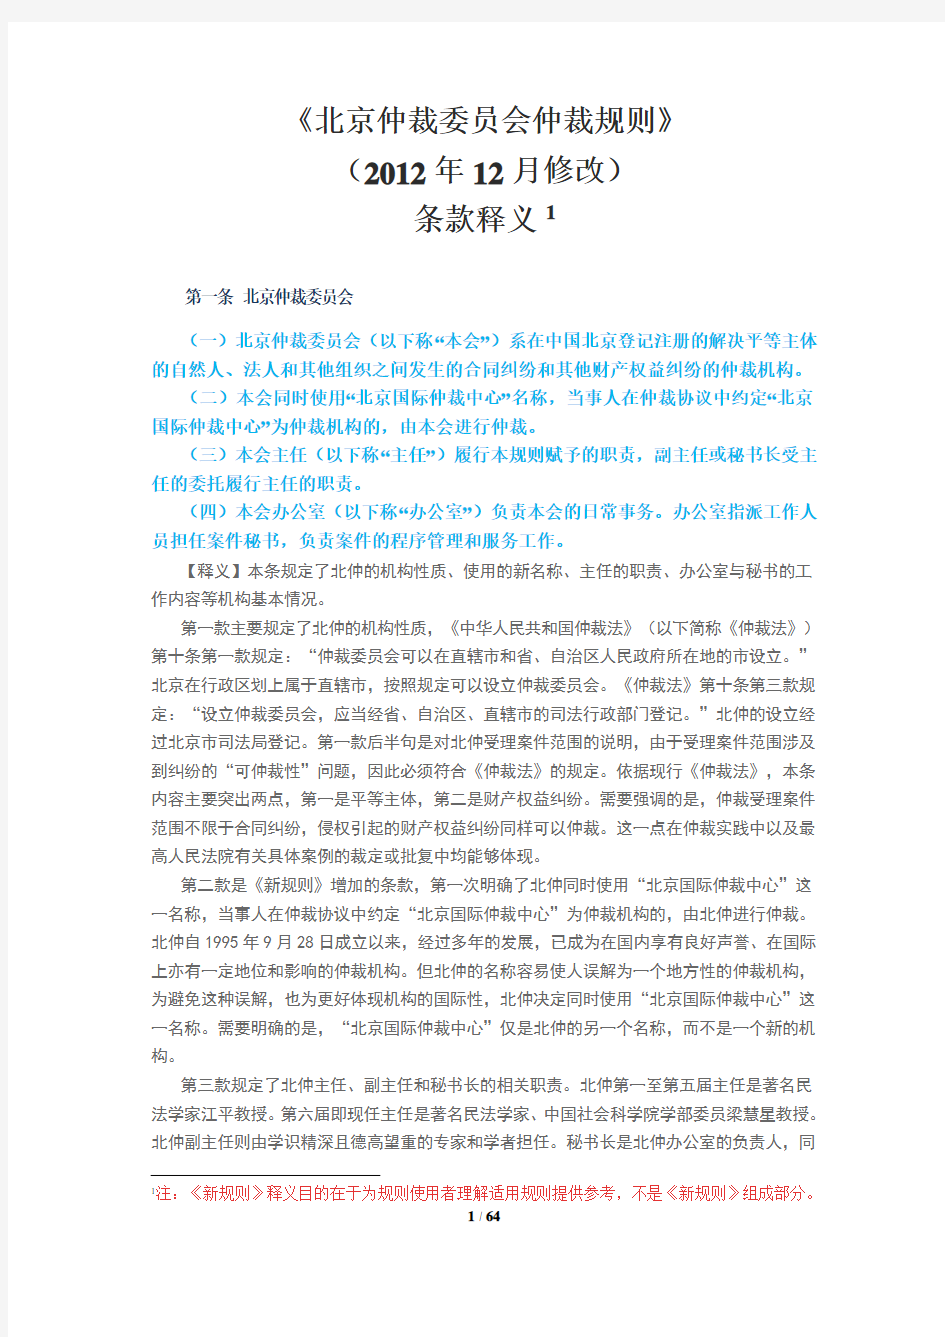 《北京仲裁委员会仲裁规则》(2014年12月修改)条款释义